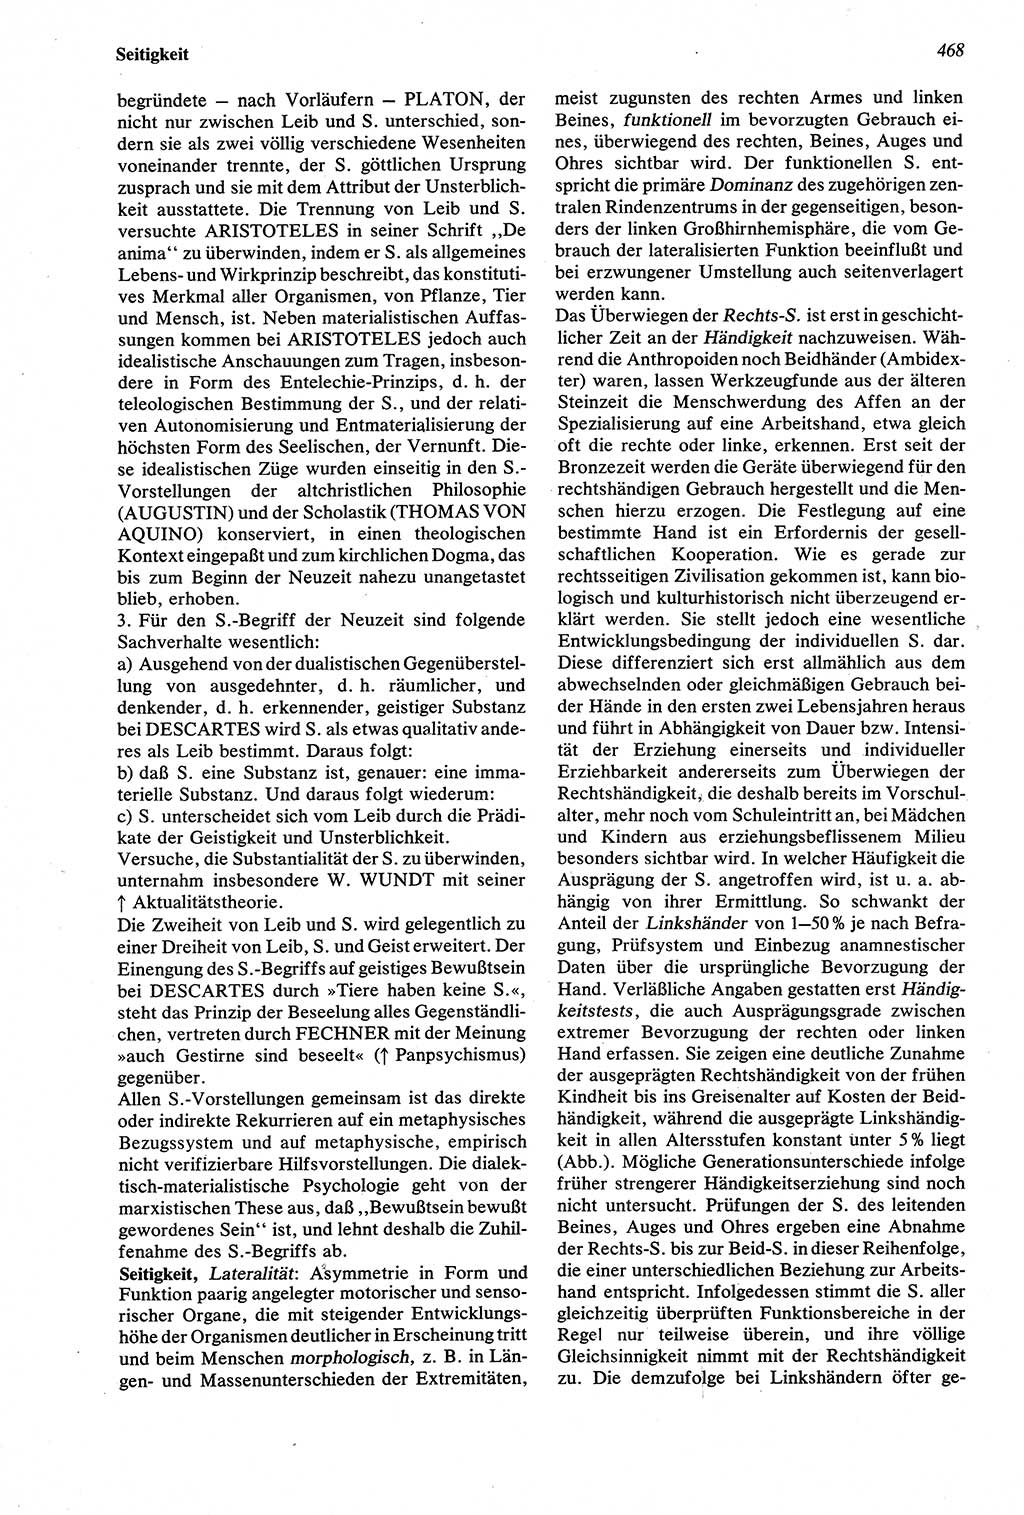 Wörterbuch der Psychologie [Deutsche Demokratische Republik (DDR)] 1976, Seite 468 (Wb. Psych. DDR 1976, S. 468)